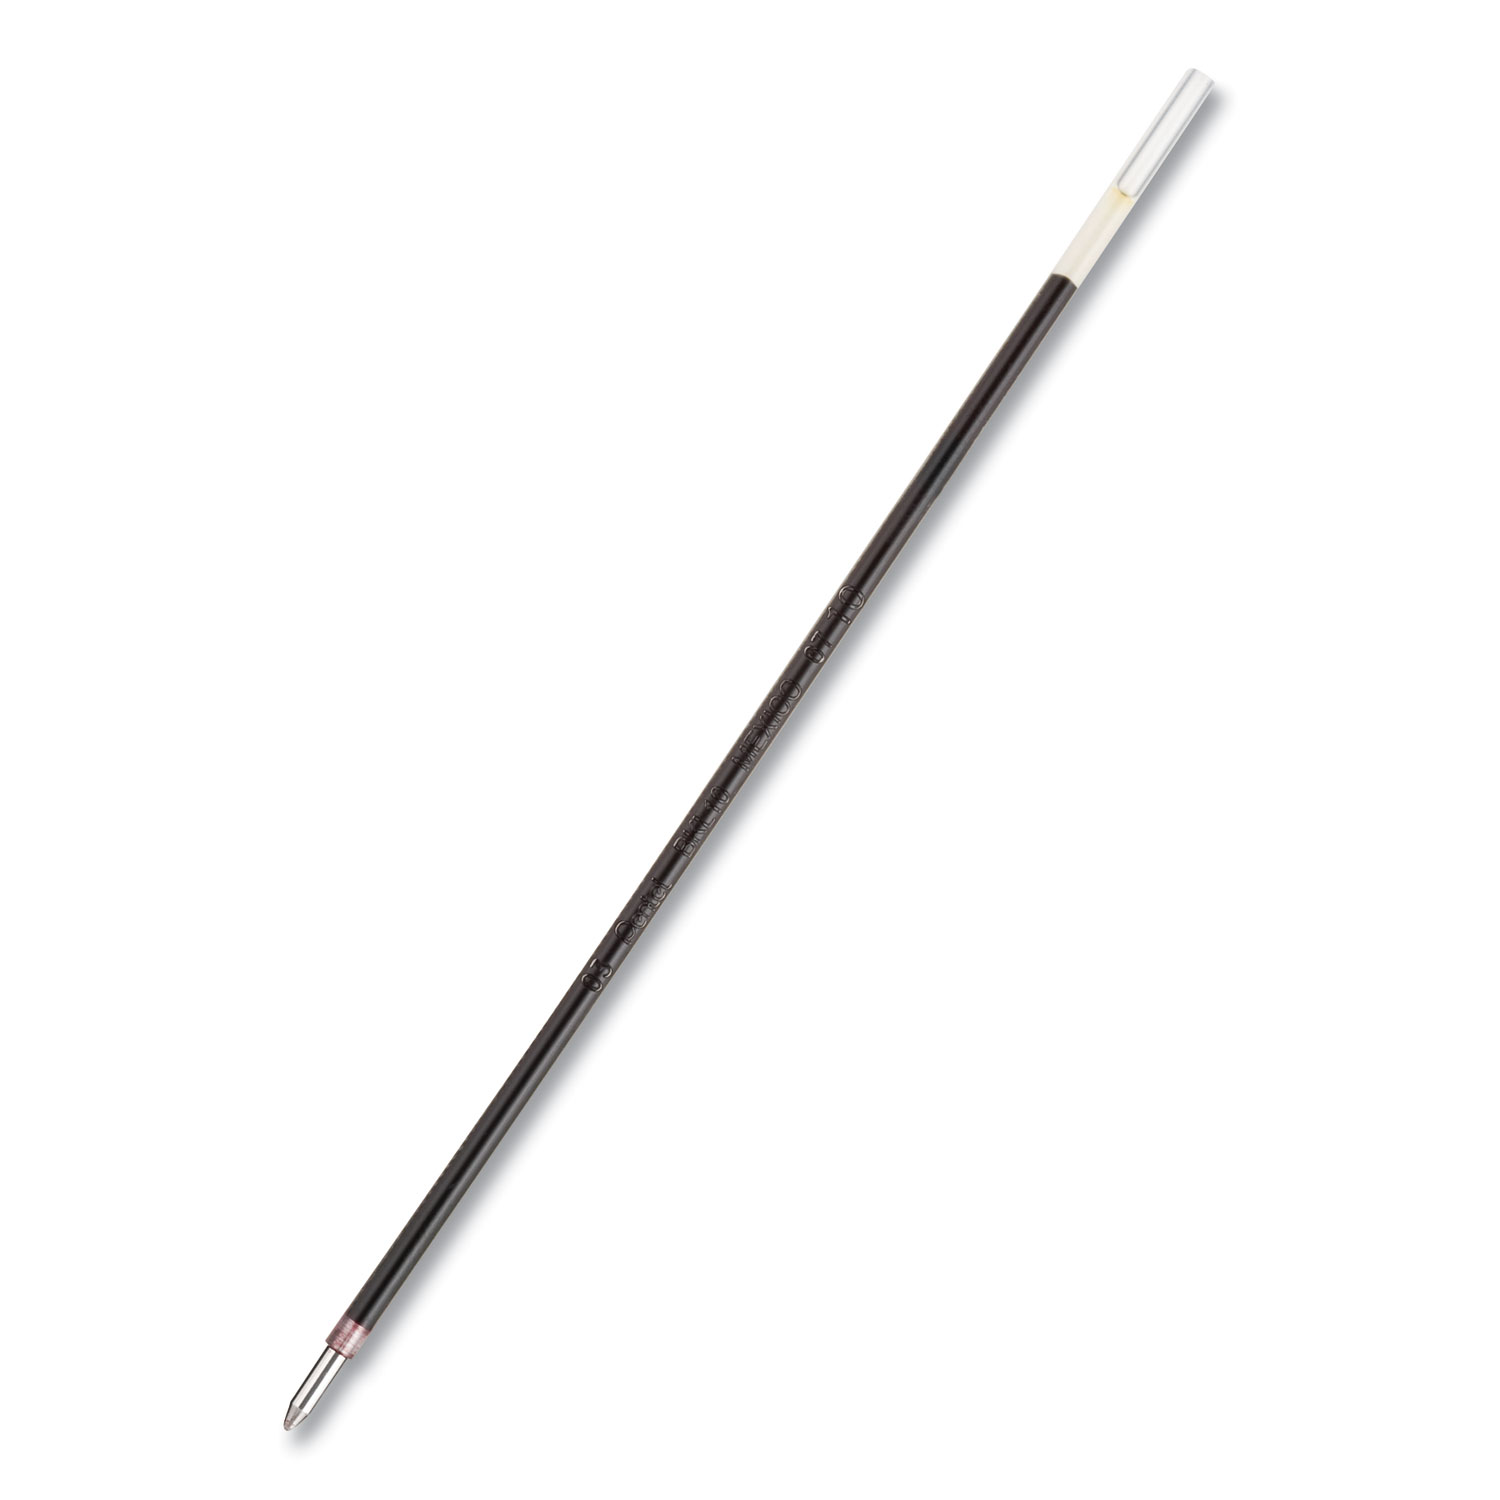  Pentel BKL10B Refill for Pentel R.S.V.P. Ballpoint Pens, Medium Point, Red Ink, 2/Pack (PENBKL10B) 